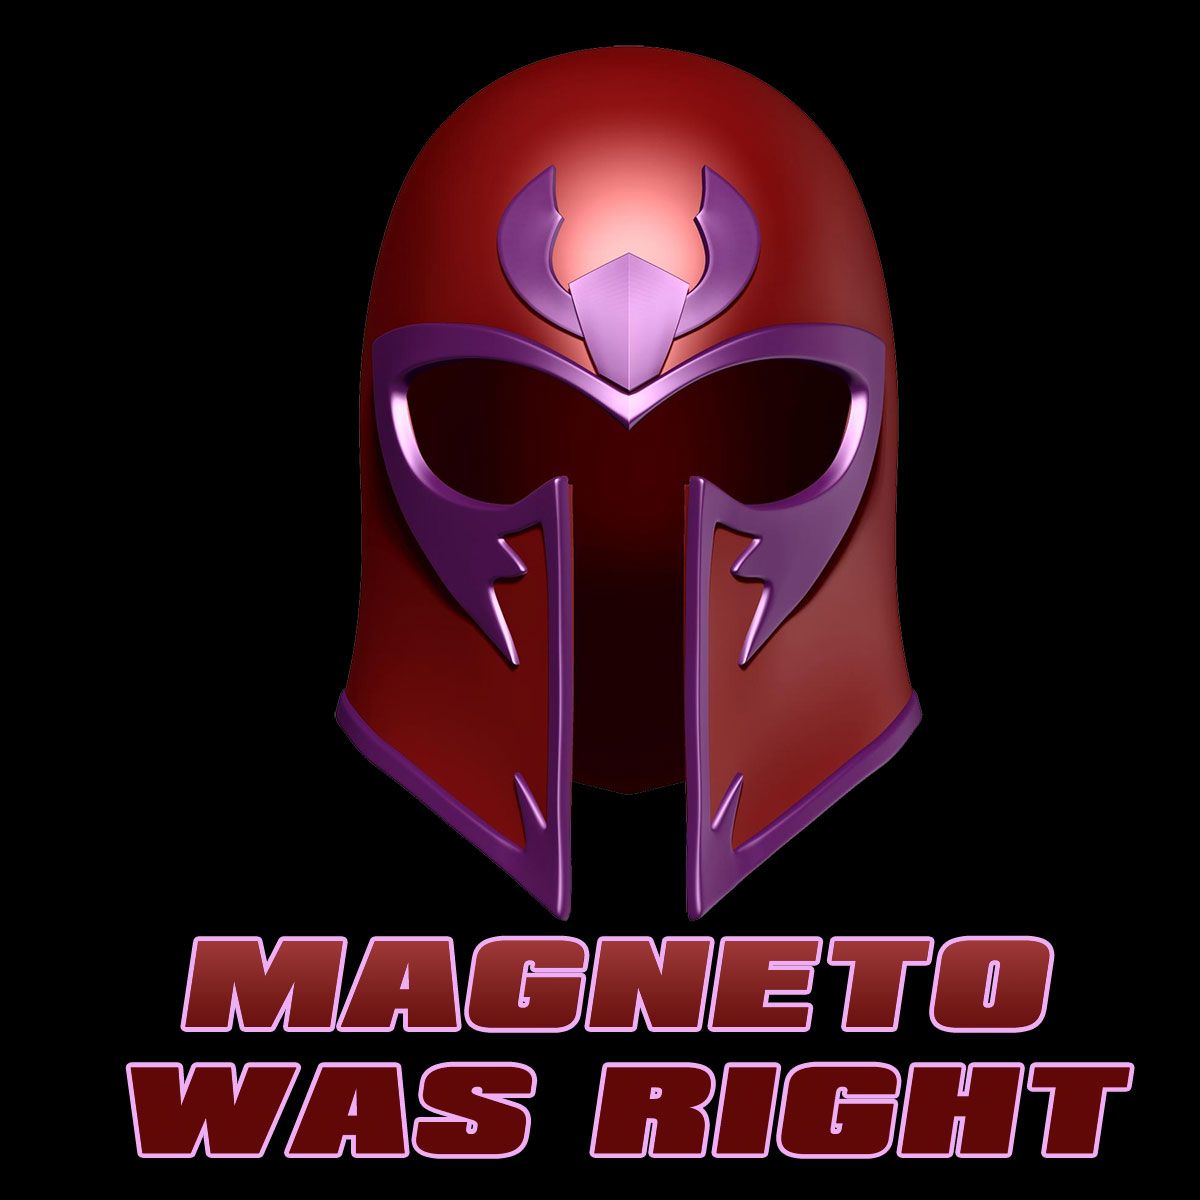 Nome do produto: Magneto Was Right